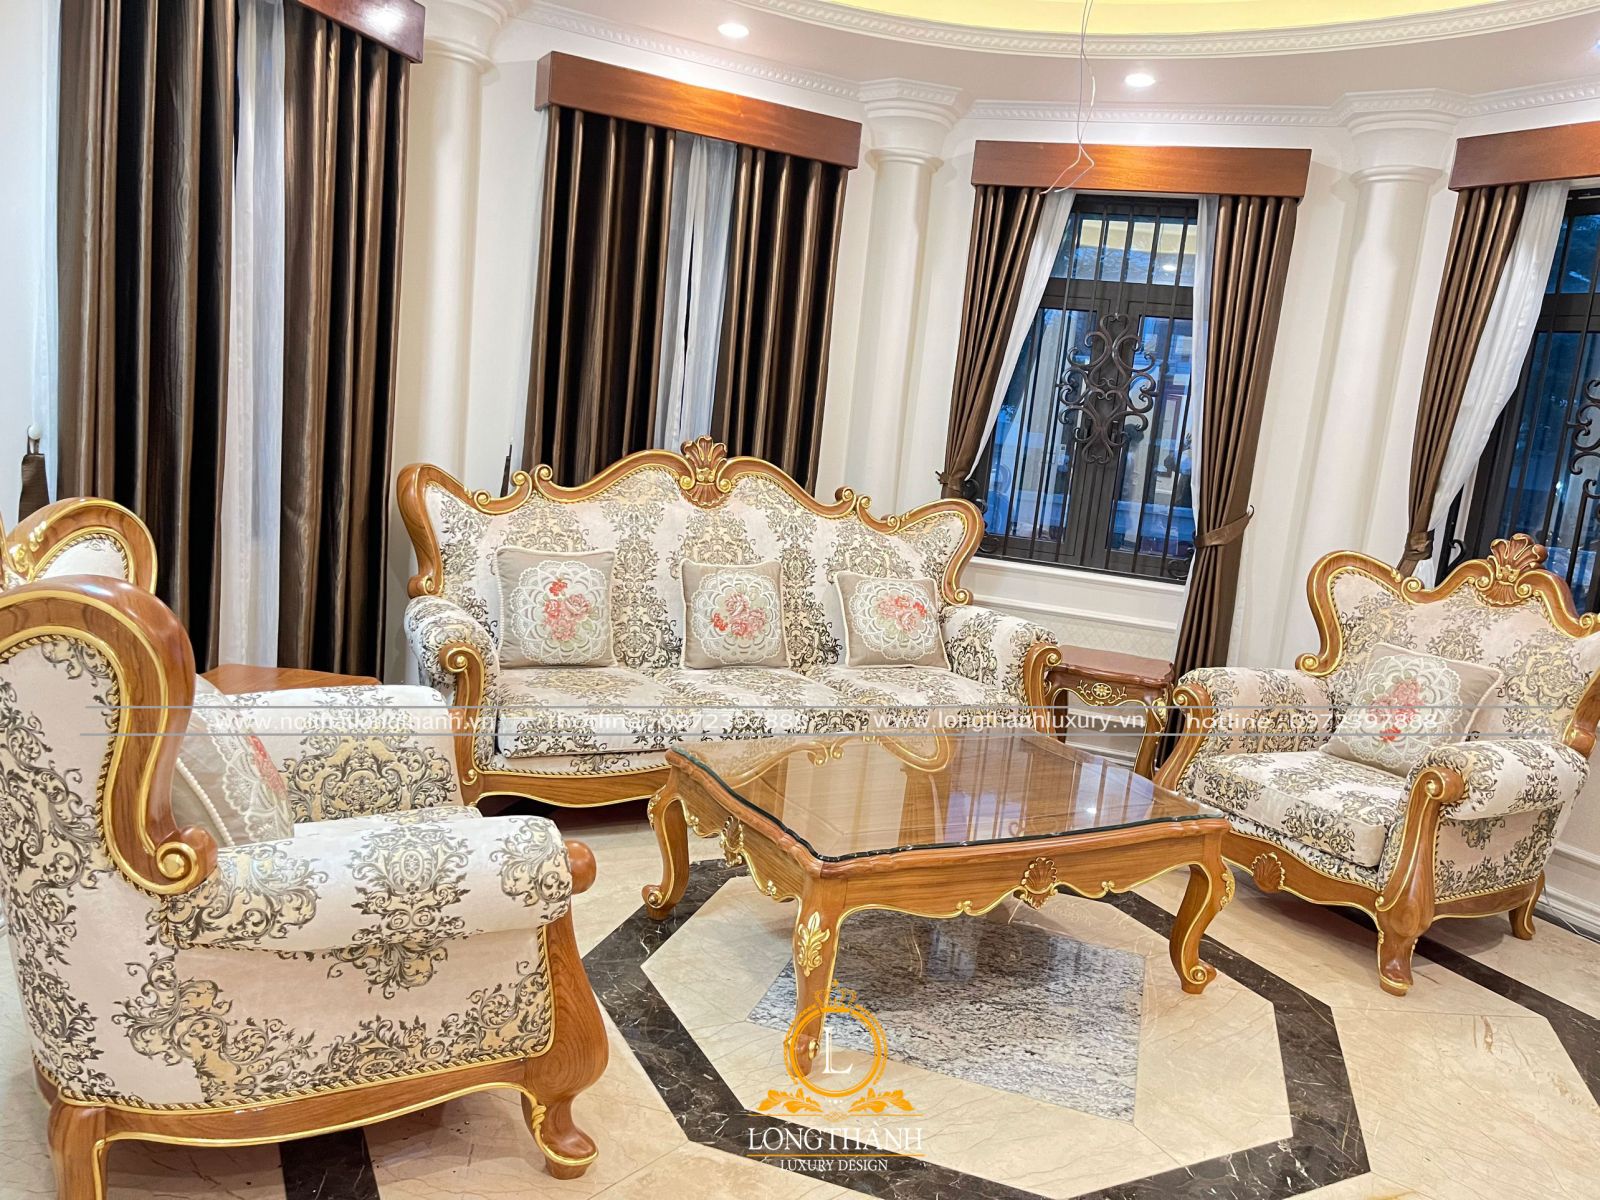 sofa tân cổ điển tại Hạ Long